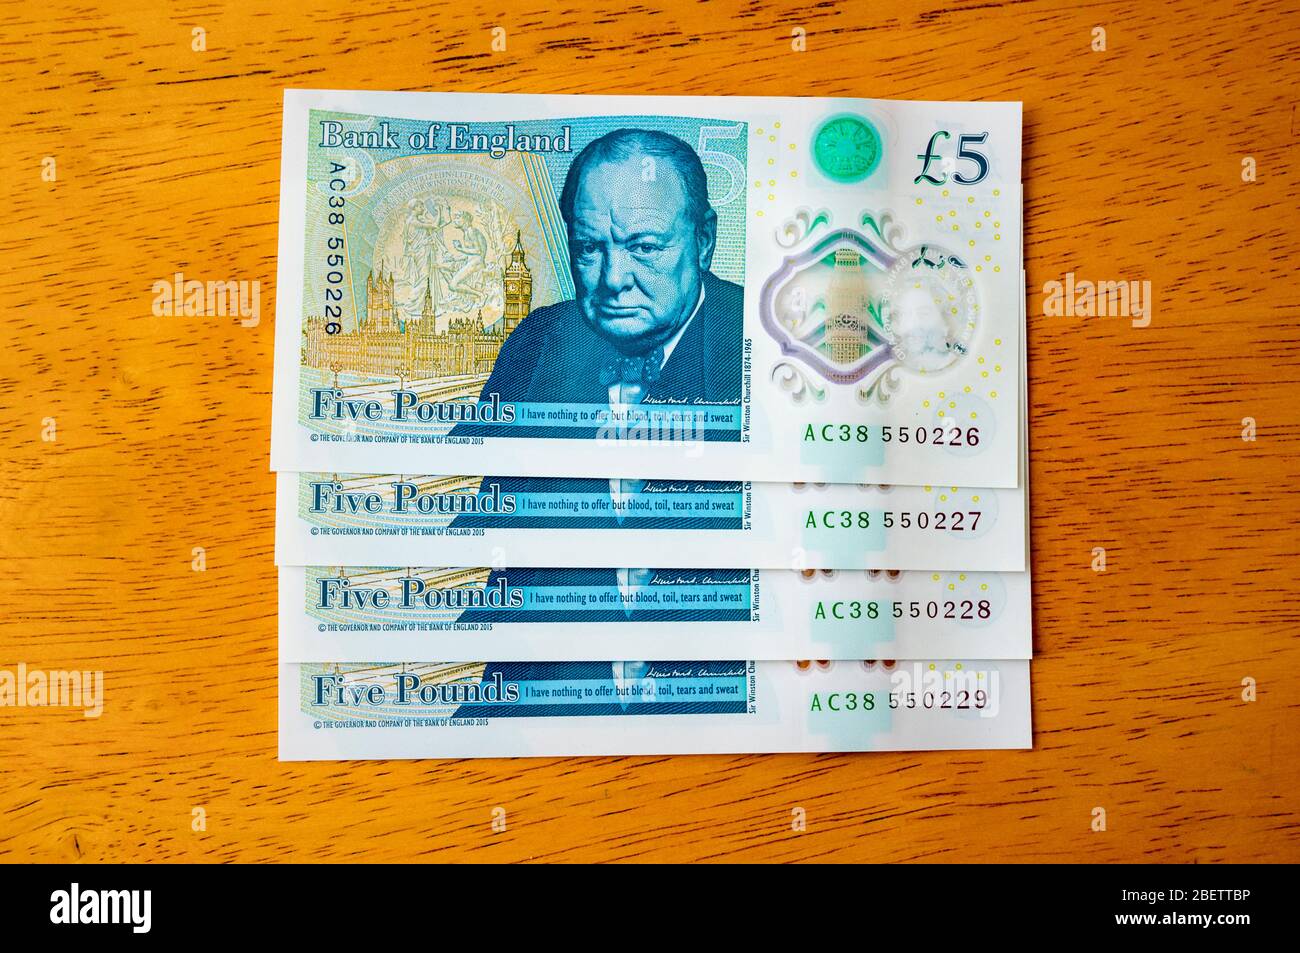 Nouveau UK Five Pound notes, inversé - publié en septembre 2016 - avec des numéros de série consécutifs. Banque D'Images